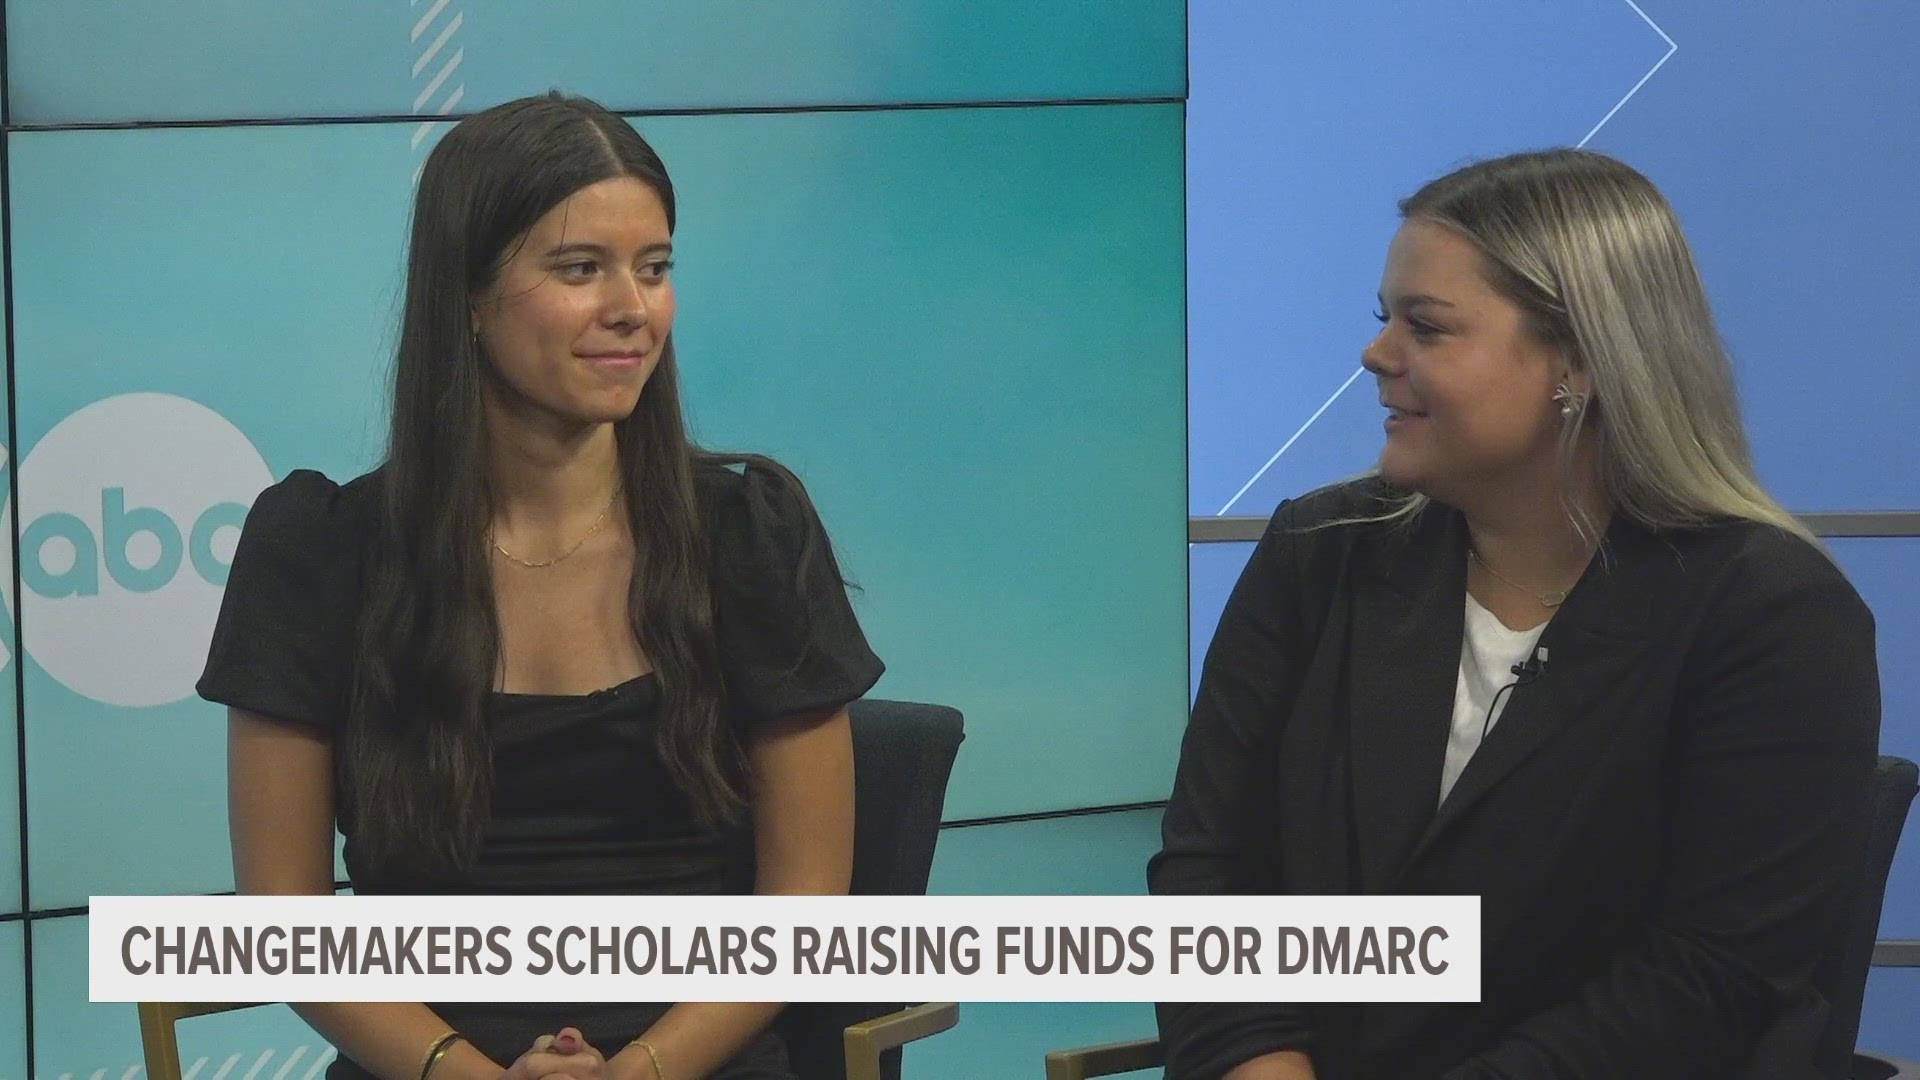 Changemakers Scholars raising funds for DMARC